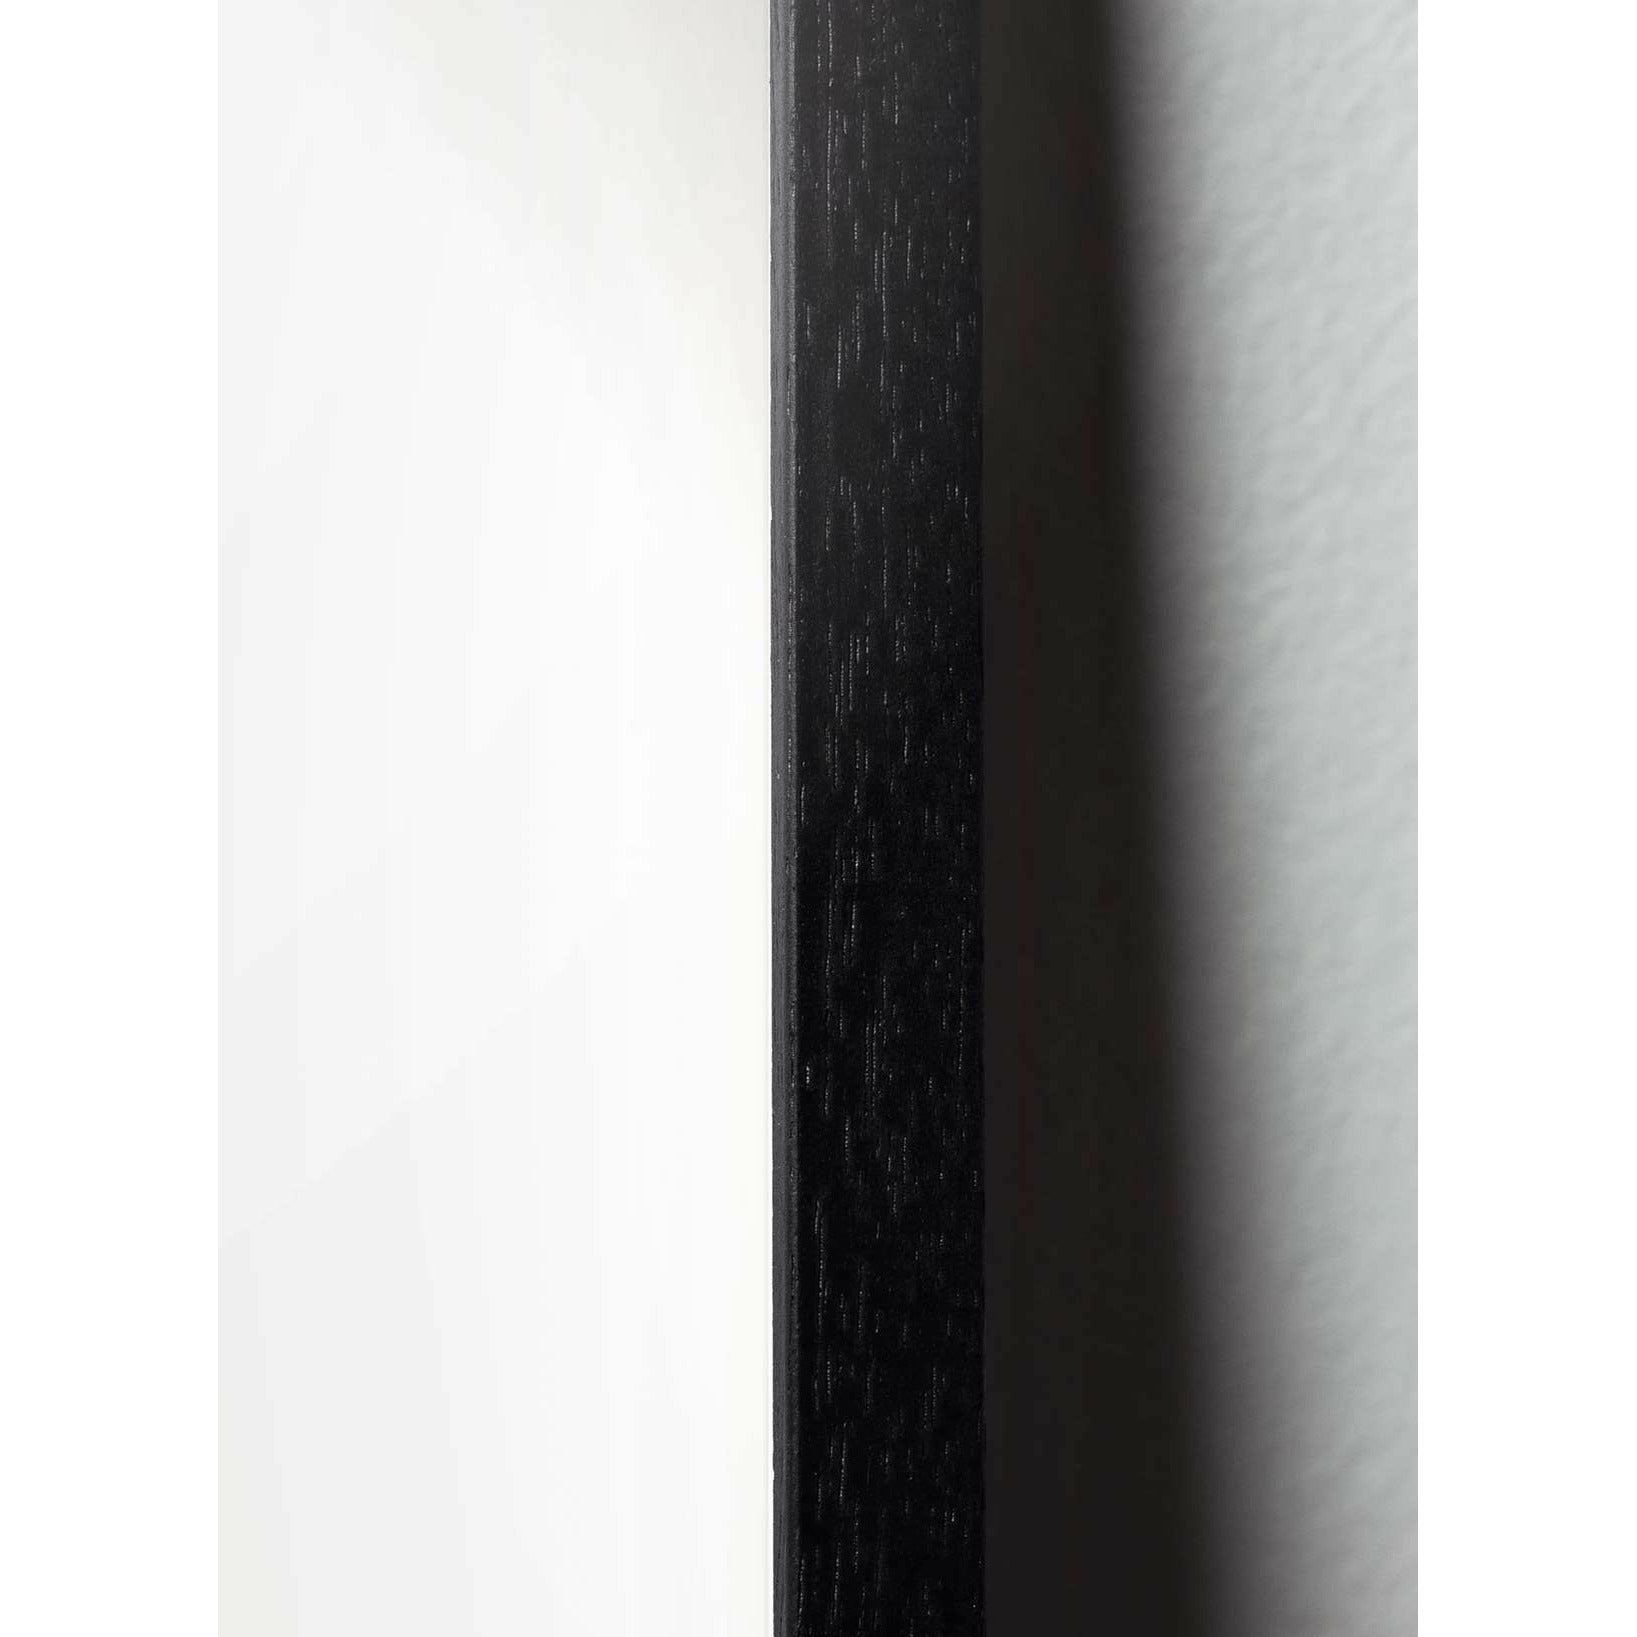 Brainchild kapky klasický plakát, rám v černém lakovaném dřevu 30x40 cm, tmavě modré pozadí